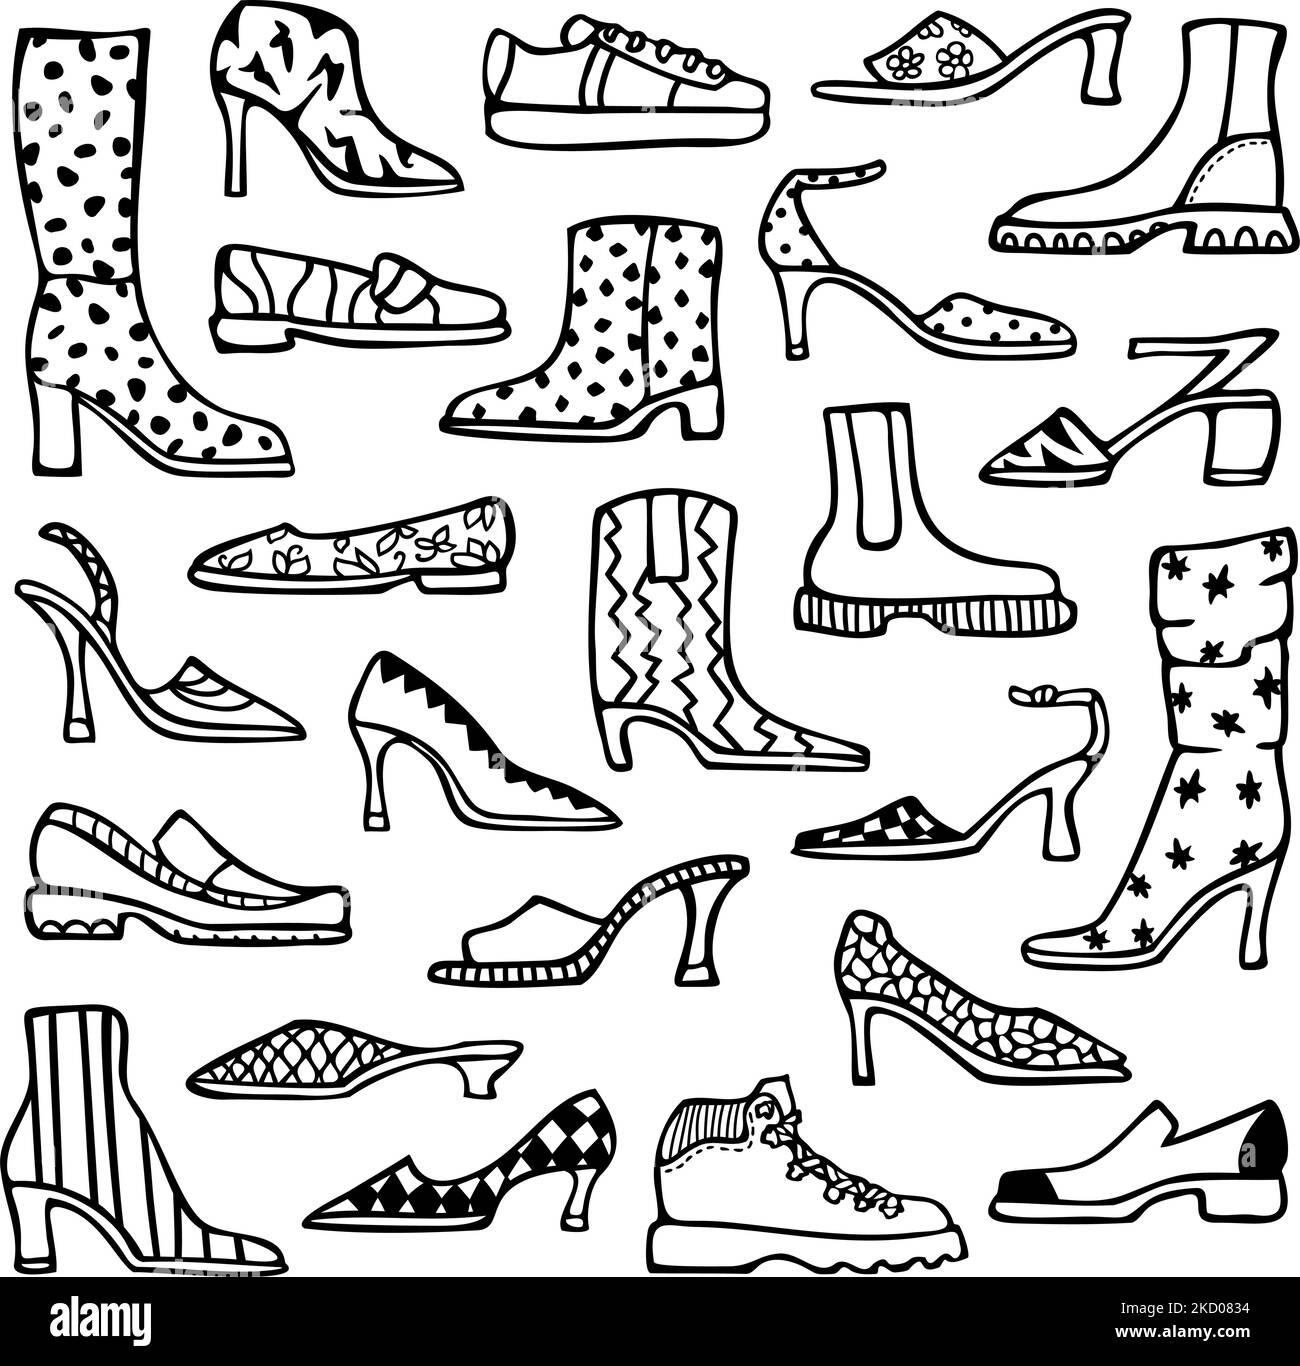 Illustrazione vettoriale con set di scarpe da donna. Calzature da donna con elementi decorativi. Disegno per libro da colorare. Illustrazione Vettoriale